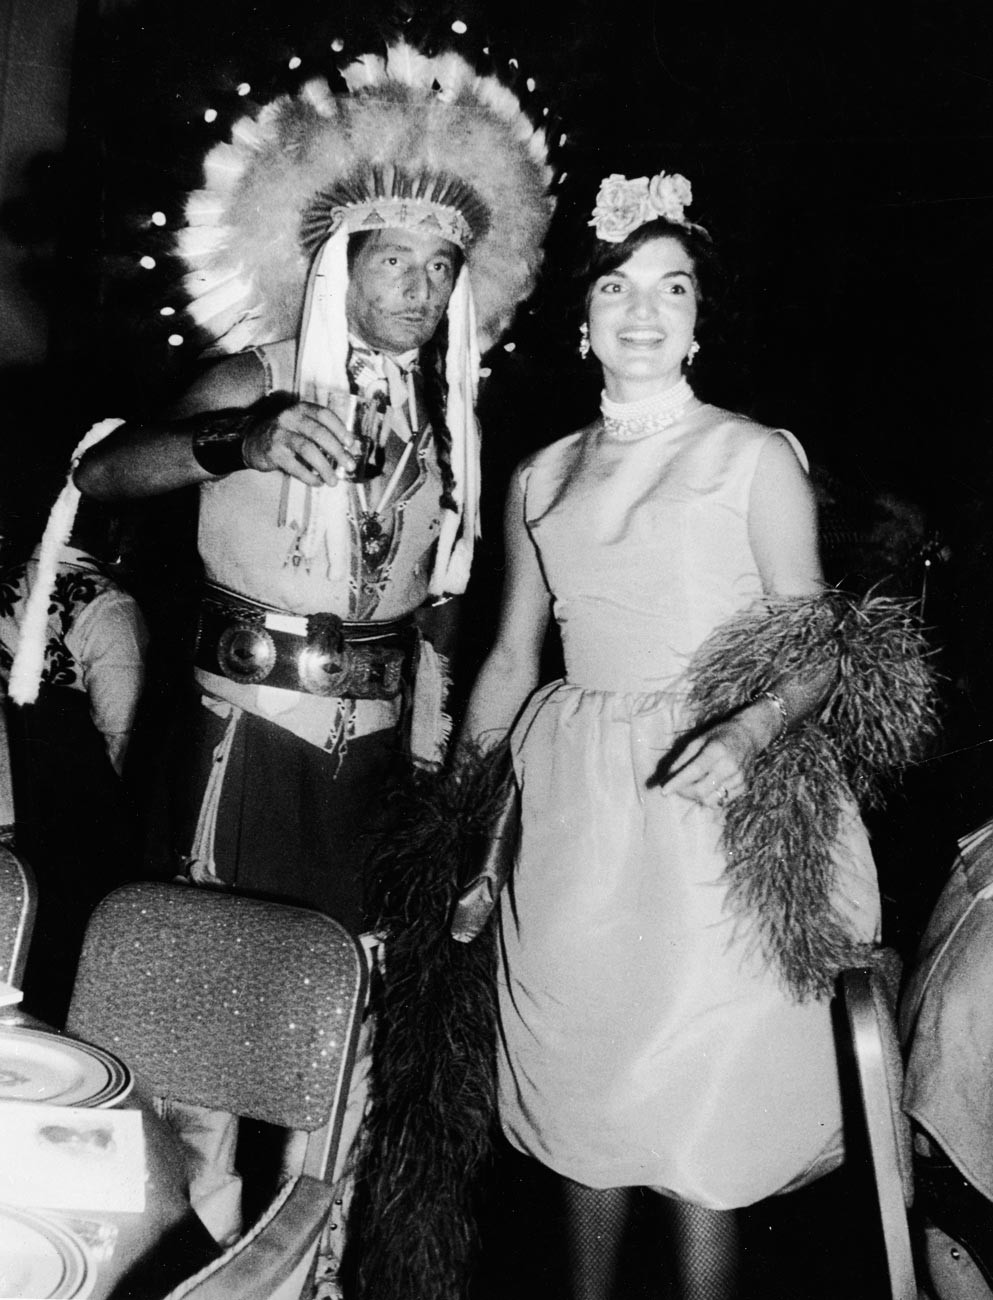 Oleg Cassini i Jacqueline Kennedy na kostimiranoj zabavi početkom 1960-ih.

